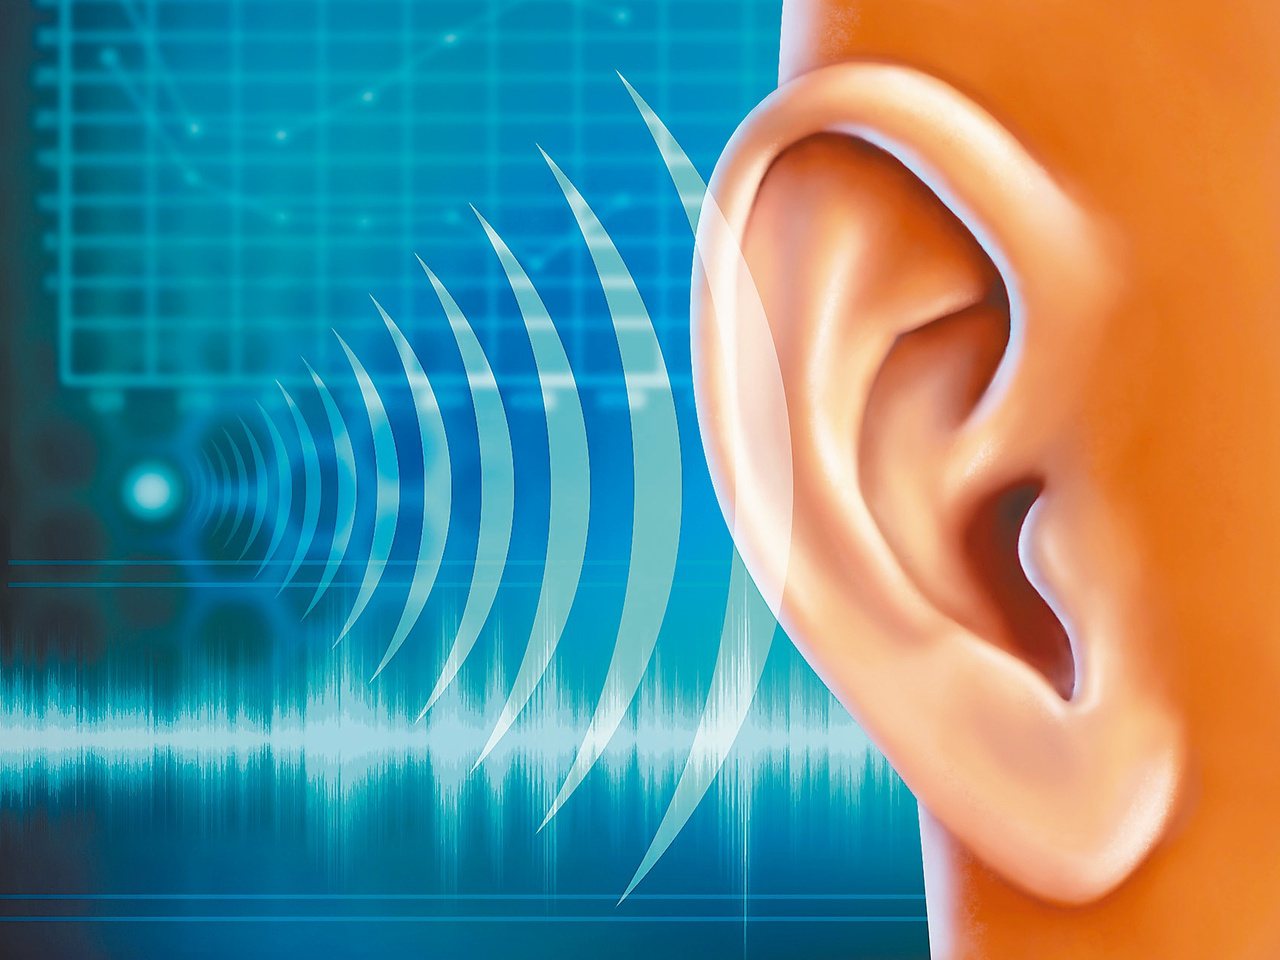 耳鳴和幻聽兩者來源不同，建議患者宜盡早就醫，早期找到病因並治療，才能減輕痛苦。圖╱123RF